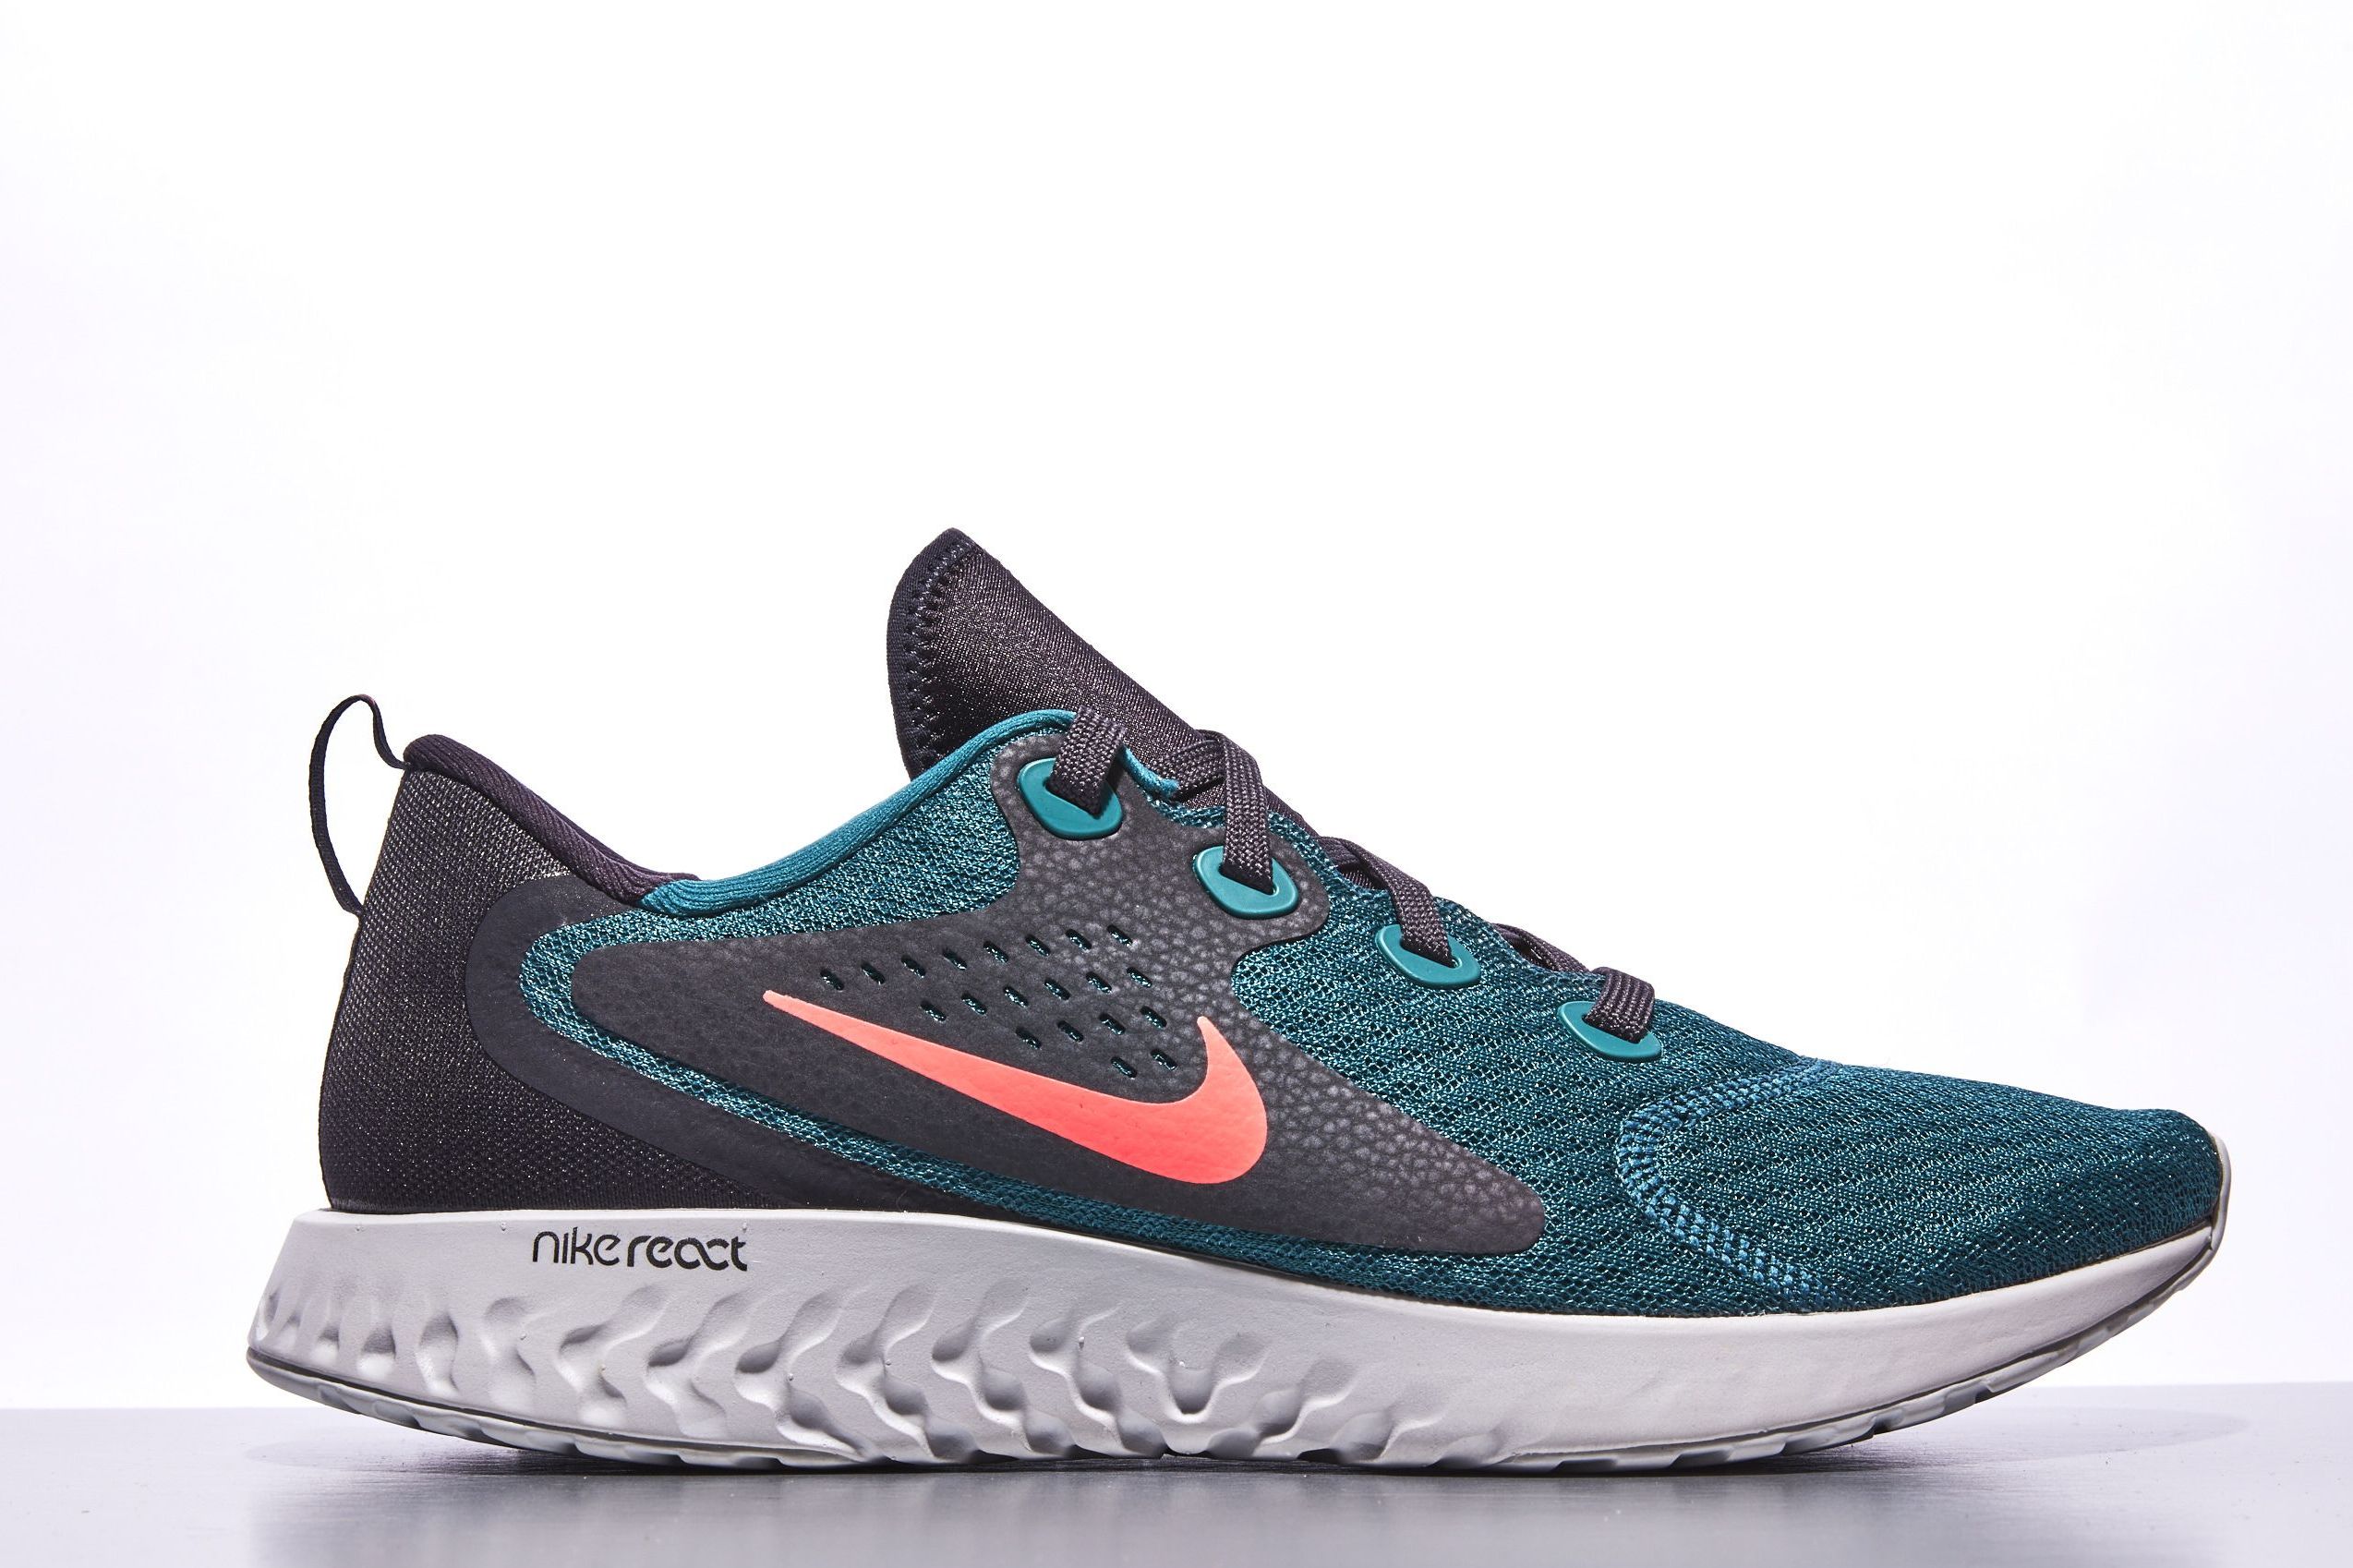 Best Nikes for Men 2019 | Nike Running Shoes for Men